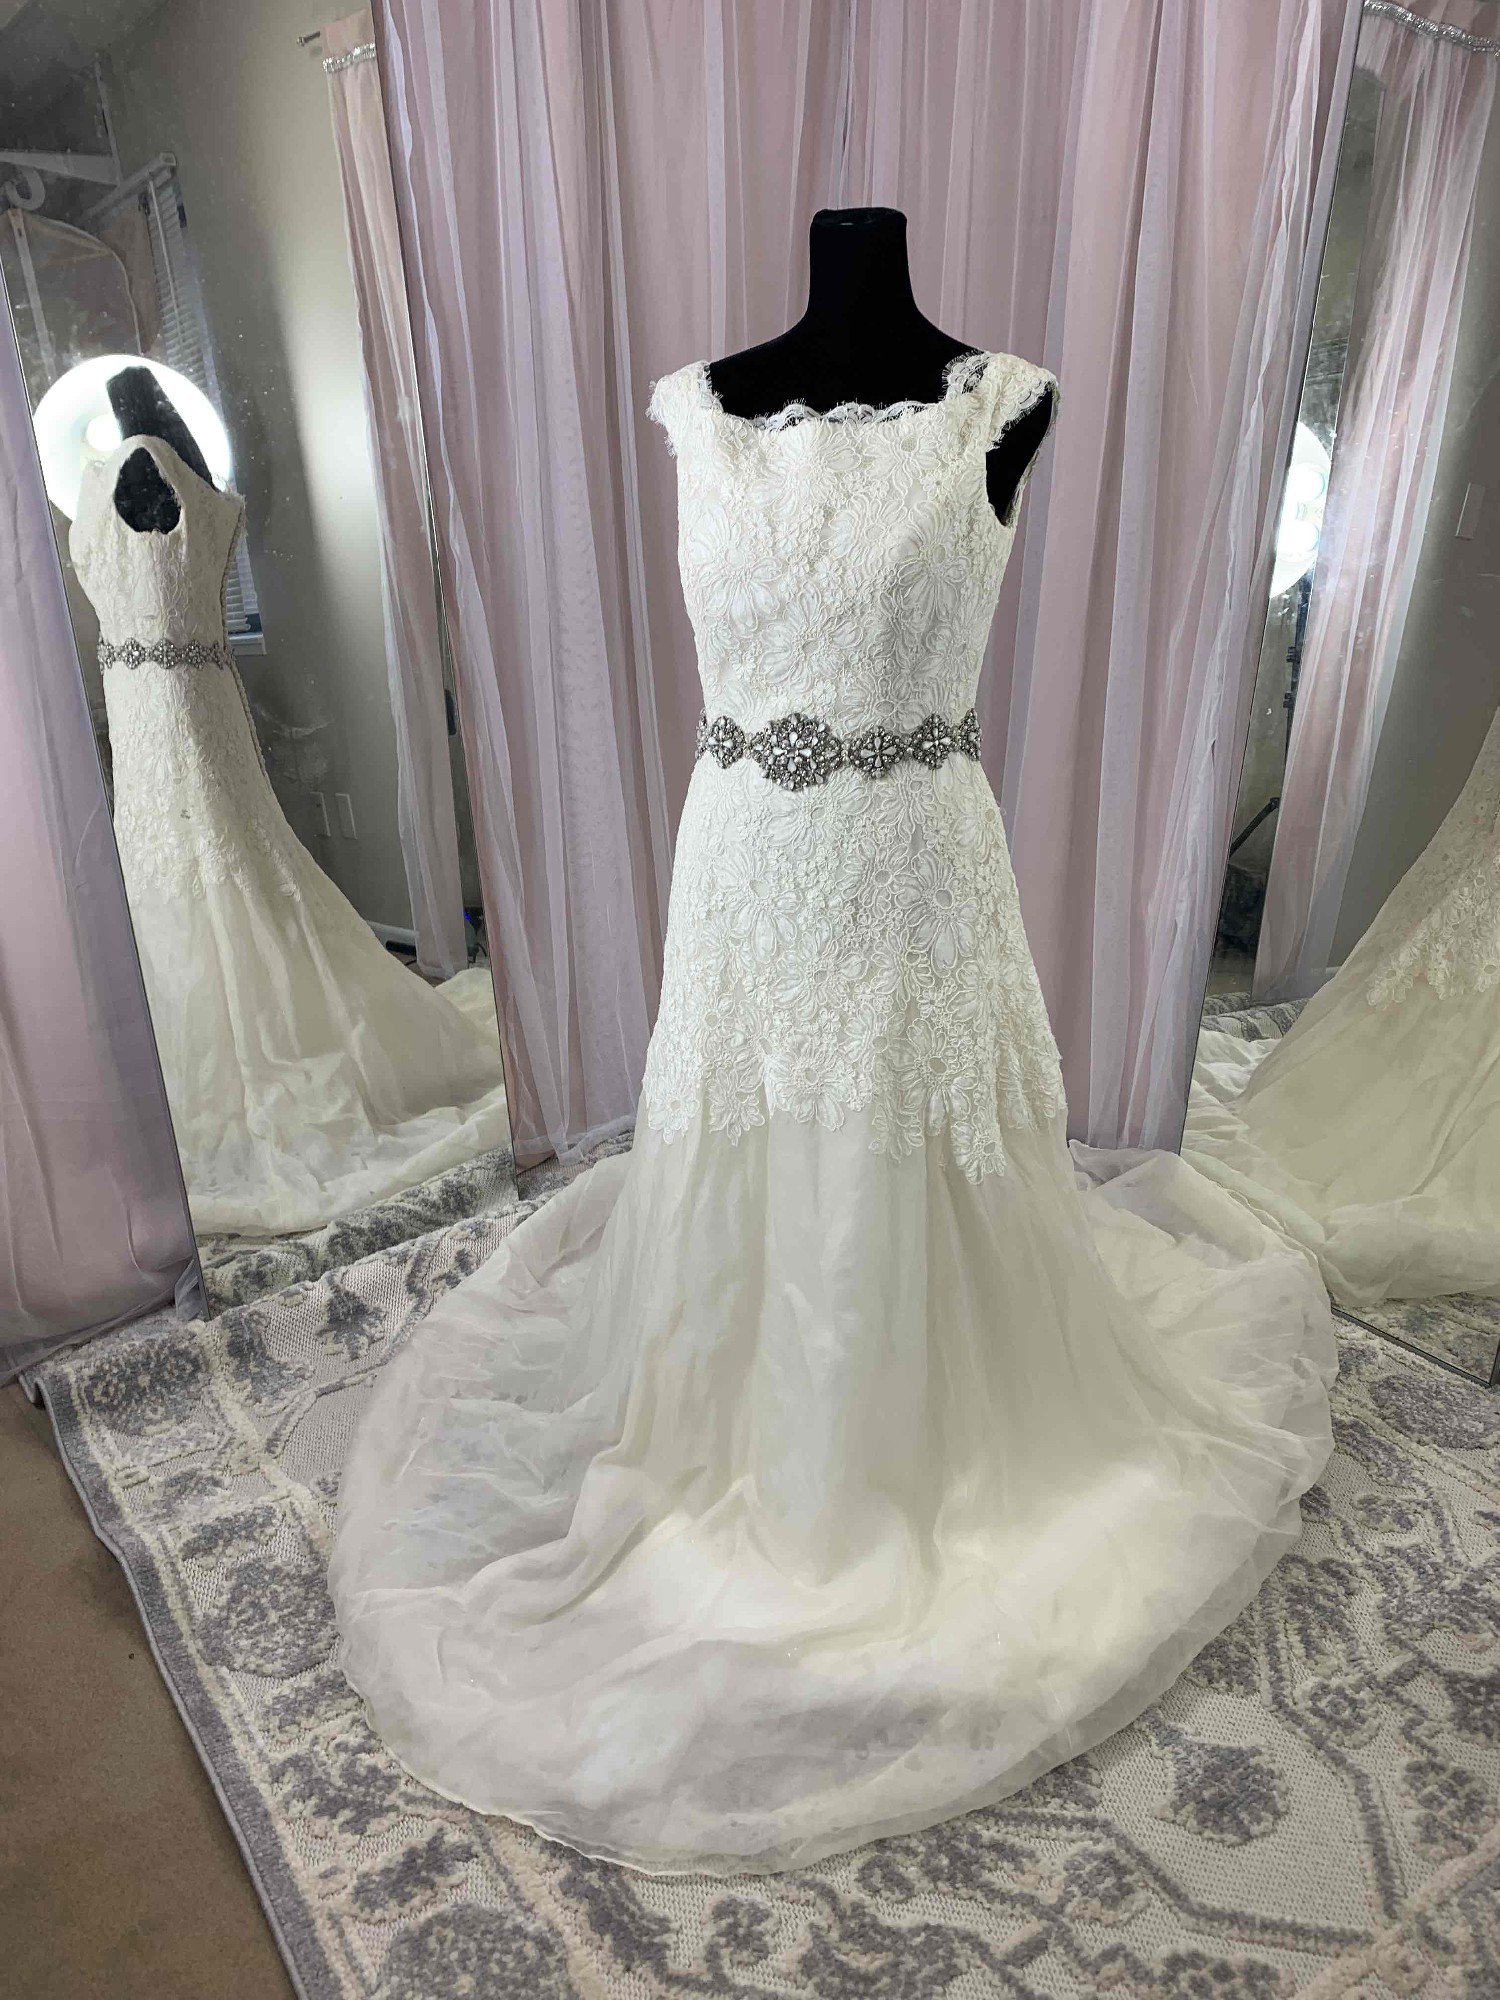 Victoria Nicole Wedding Dress - Stillwhite